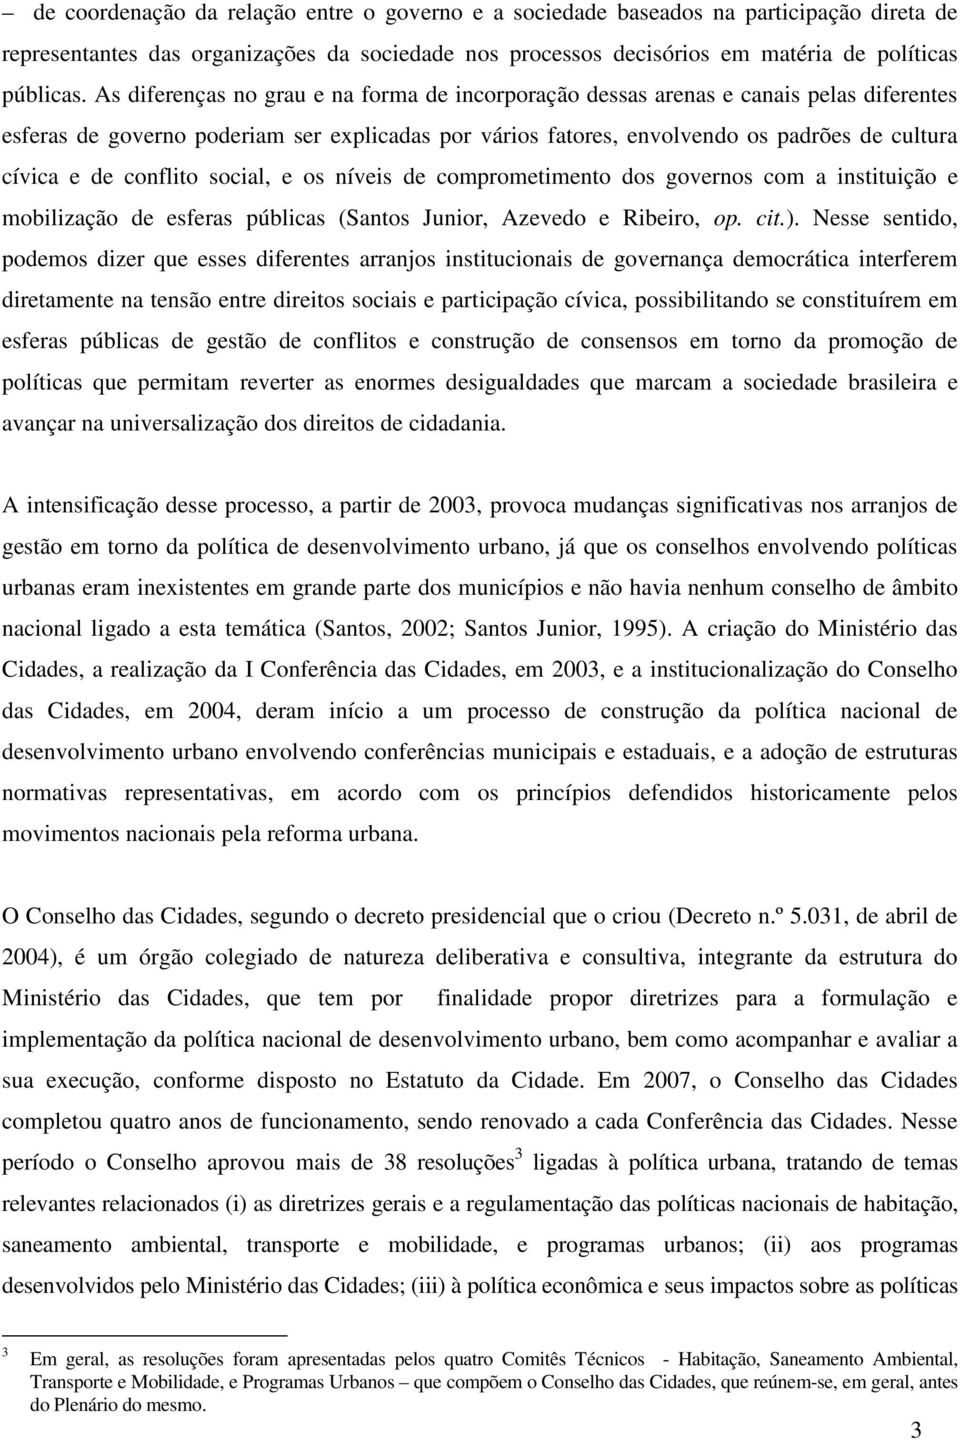 conflito social, e os níveis de comprometimento dos governos com a instituição e mobilização de esferas públicas (Santos Junior, Azevedo e Ribeiro, op. cit.).